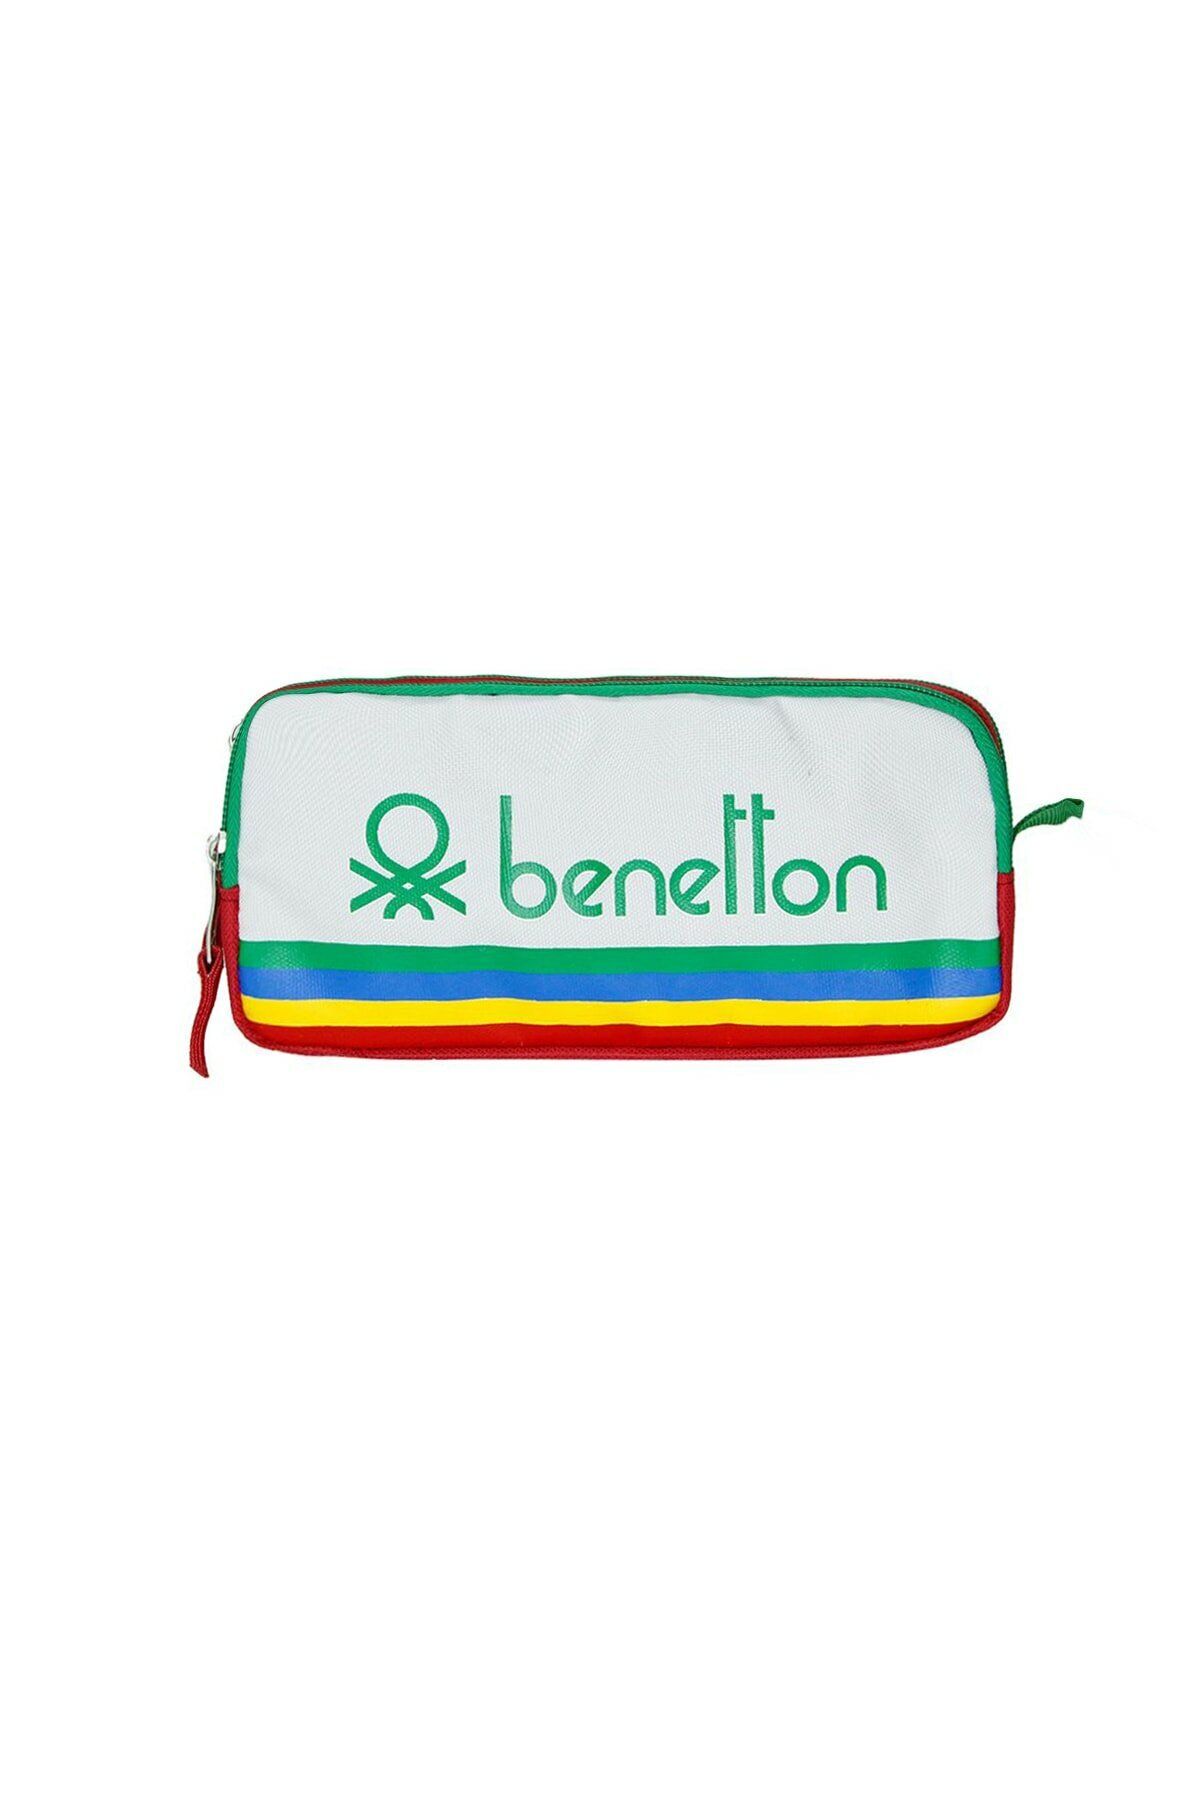 Benetton B.united Colors Of Benetton Çift Gözlü Kalem Kutu Beyaz 70031